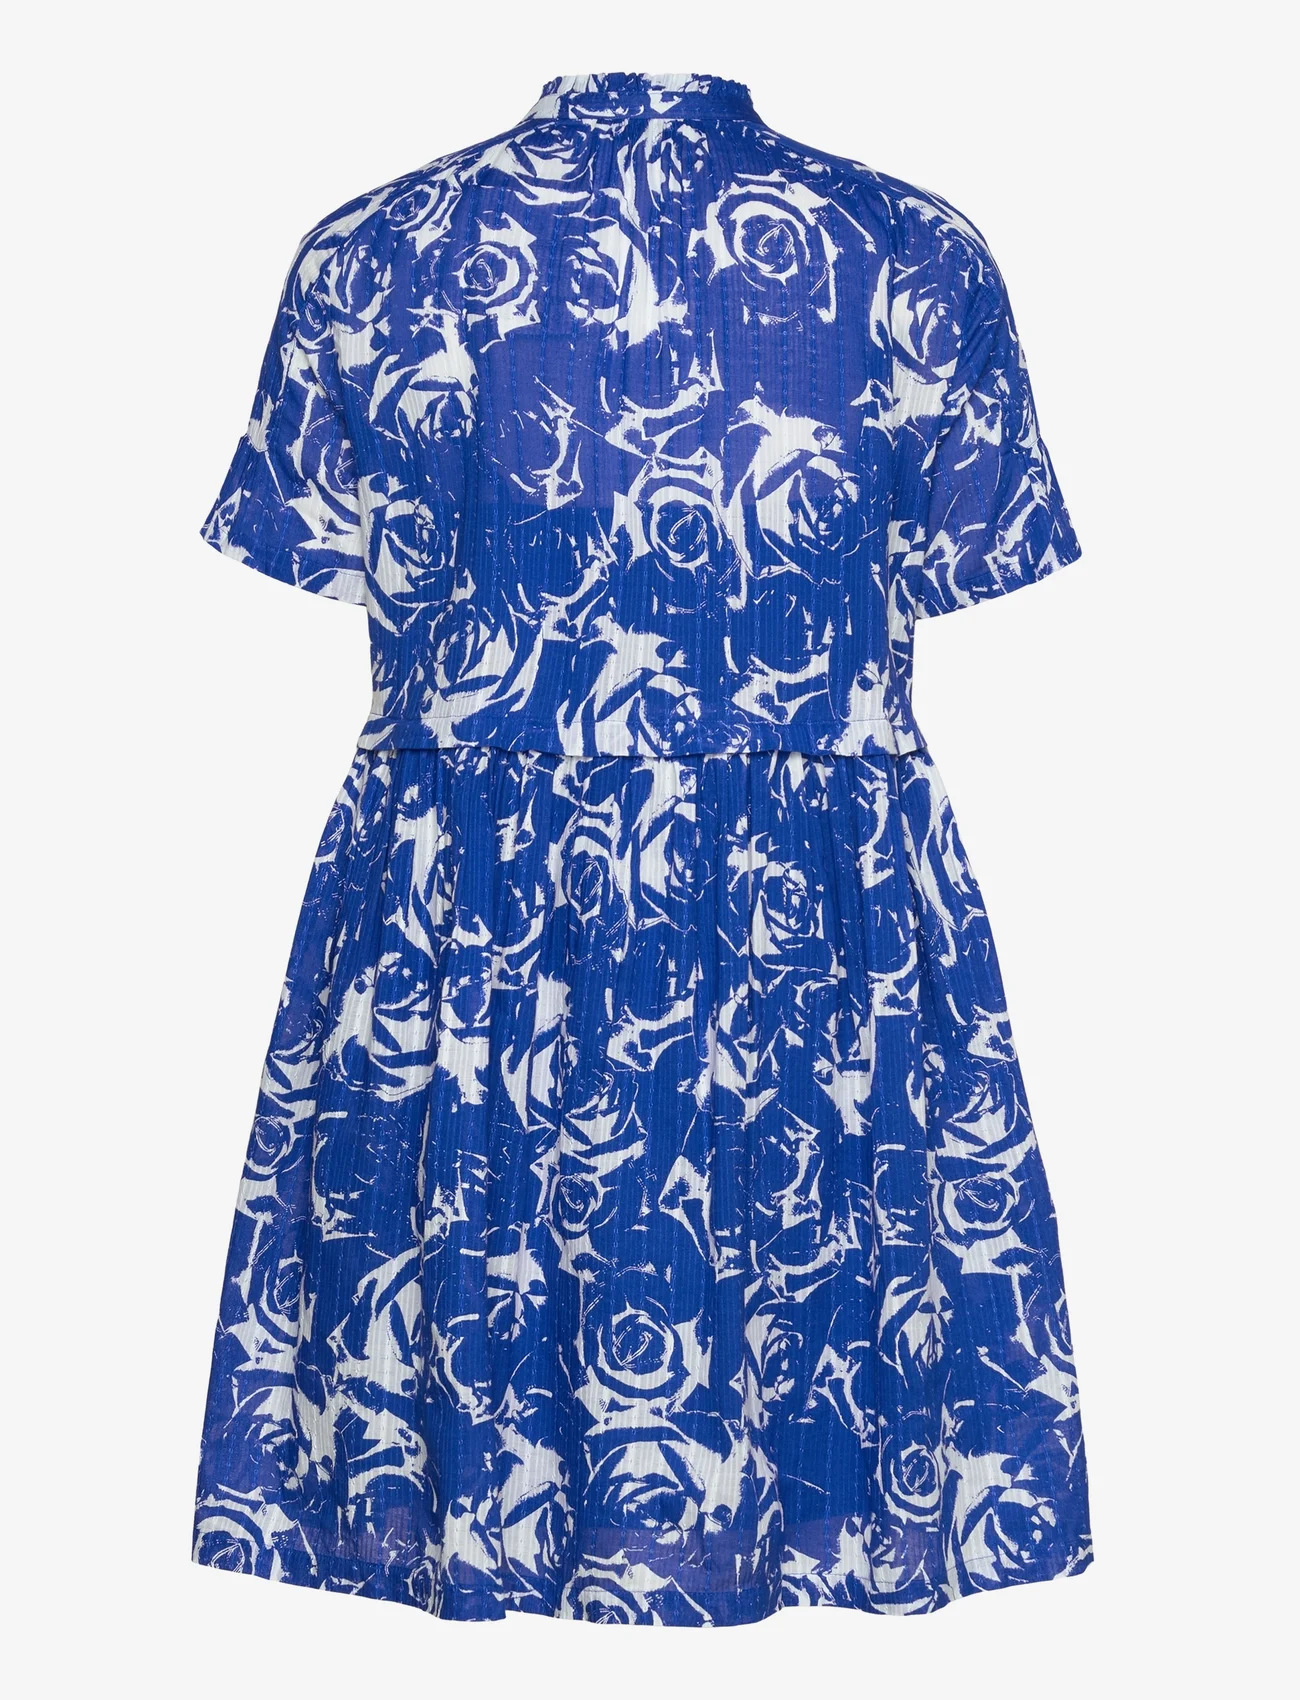 Esprit Casual - Dresses light woven - marškinių tipo suknelės - bright blue 2 - 1